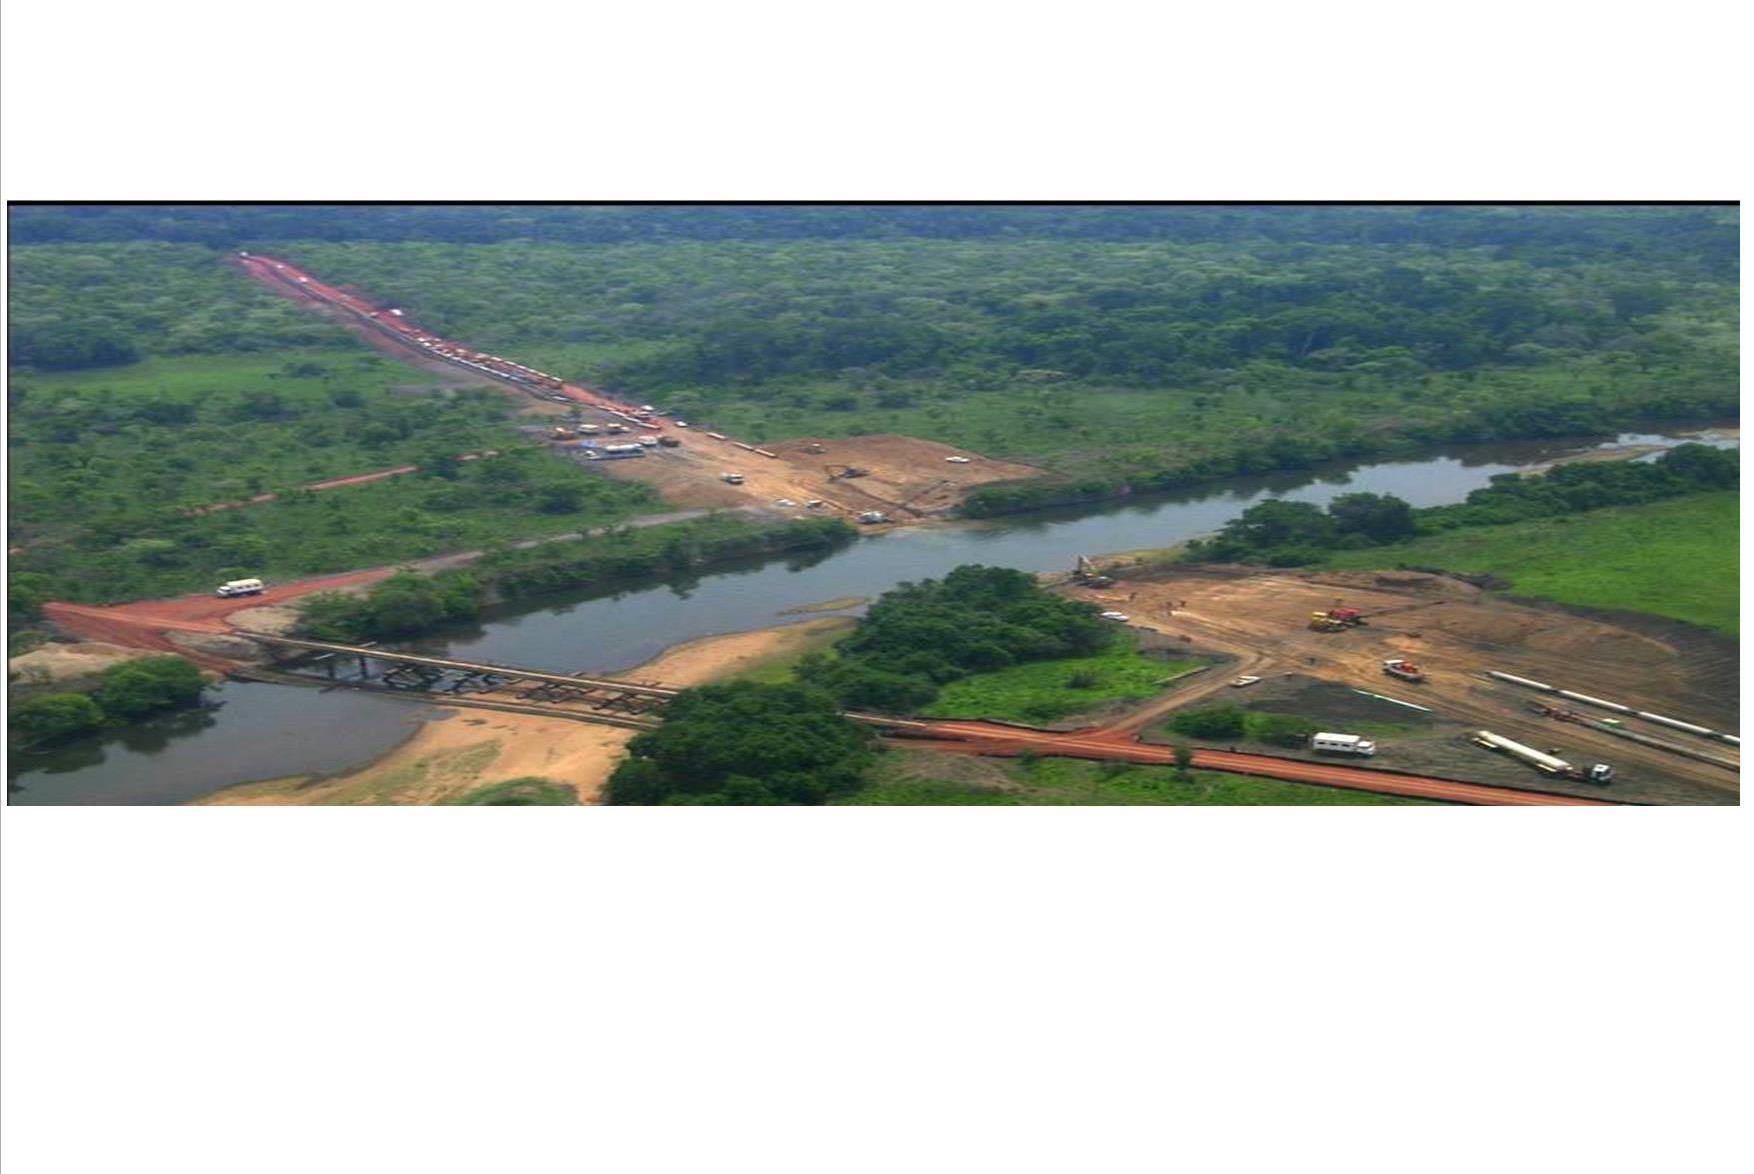 Le Pipeline Tchad/Cameroun a été adapté au Barrage de Lom Pangar (partie du tracé qui a été modifiée au niveau de la traversée du fleuve Pangar)